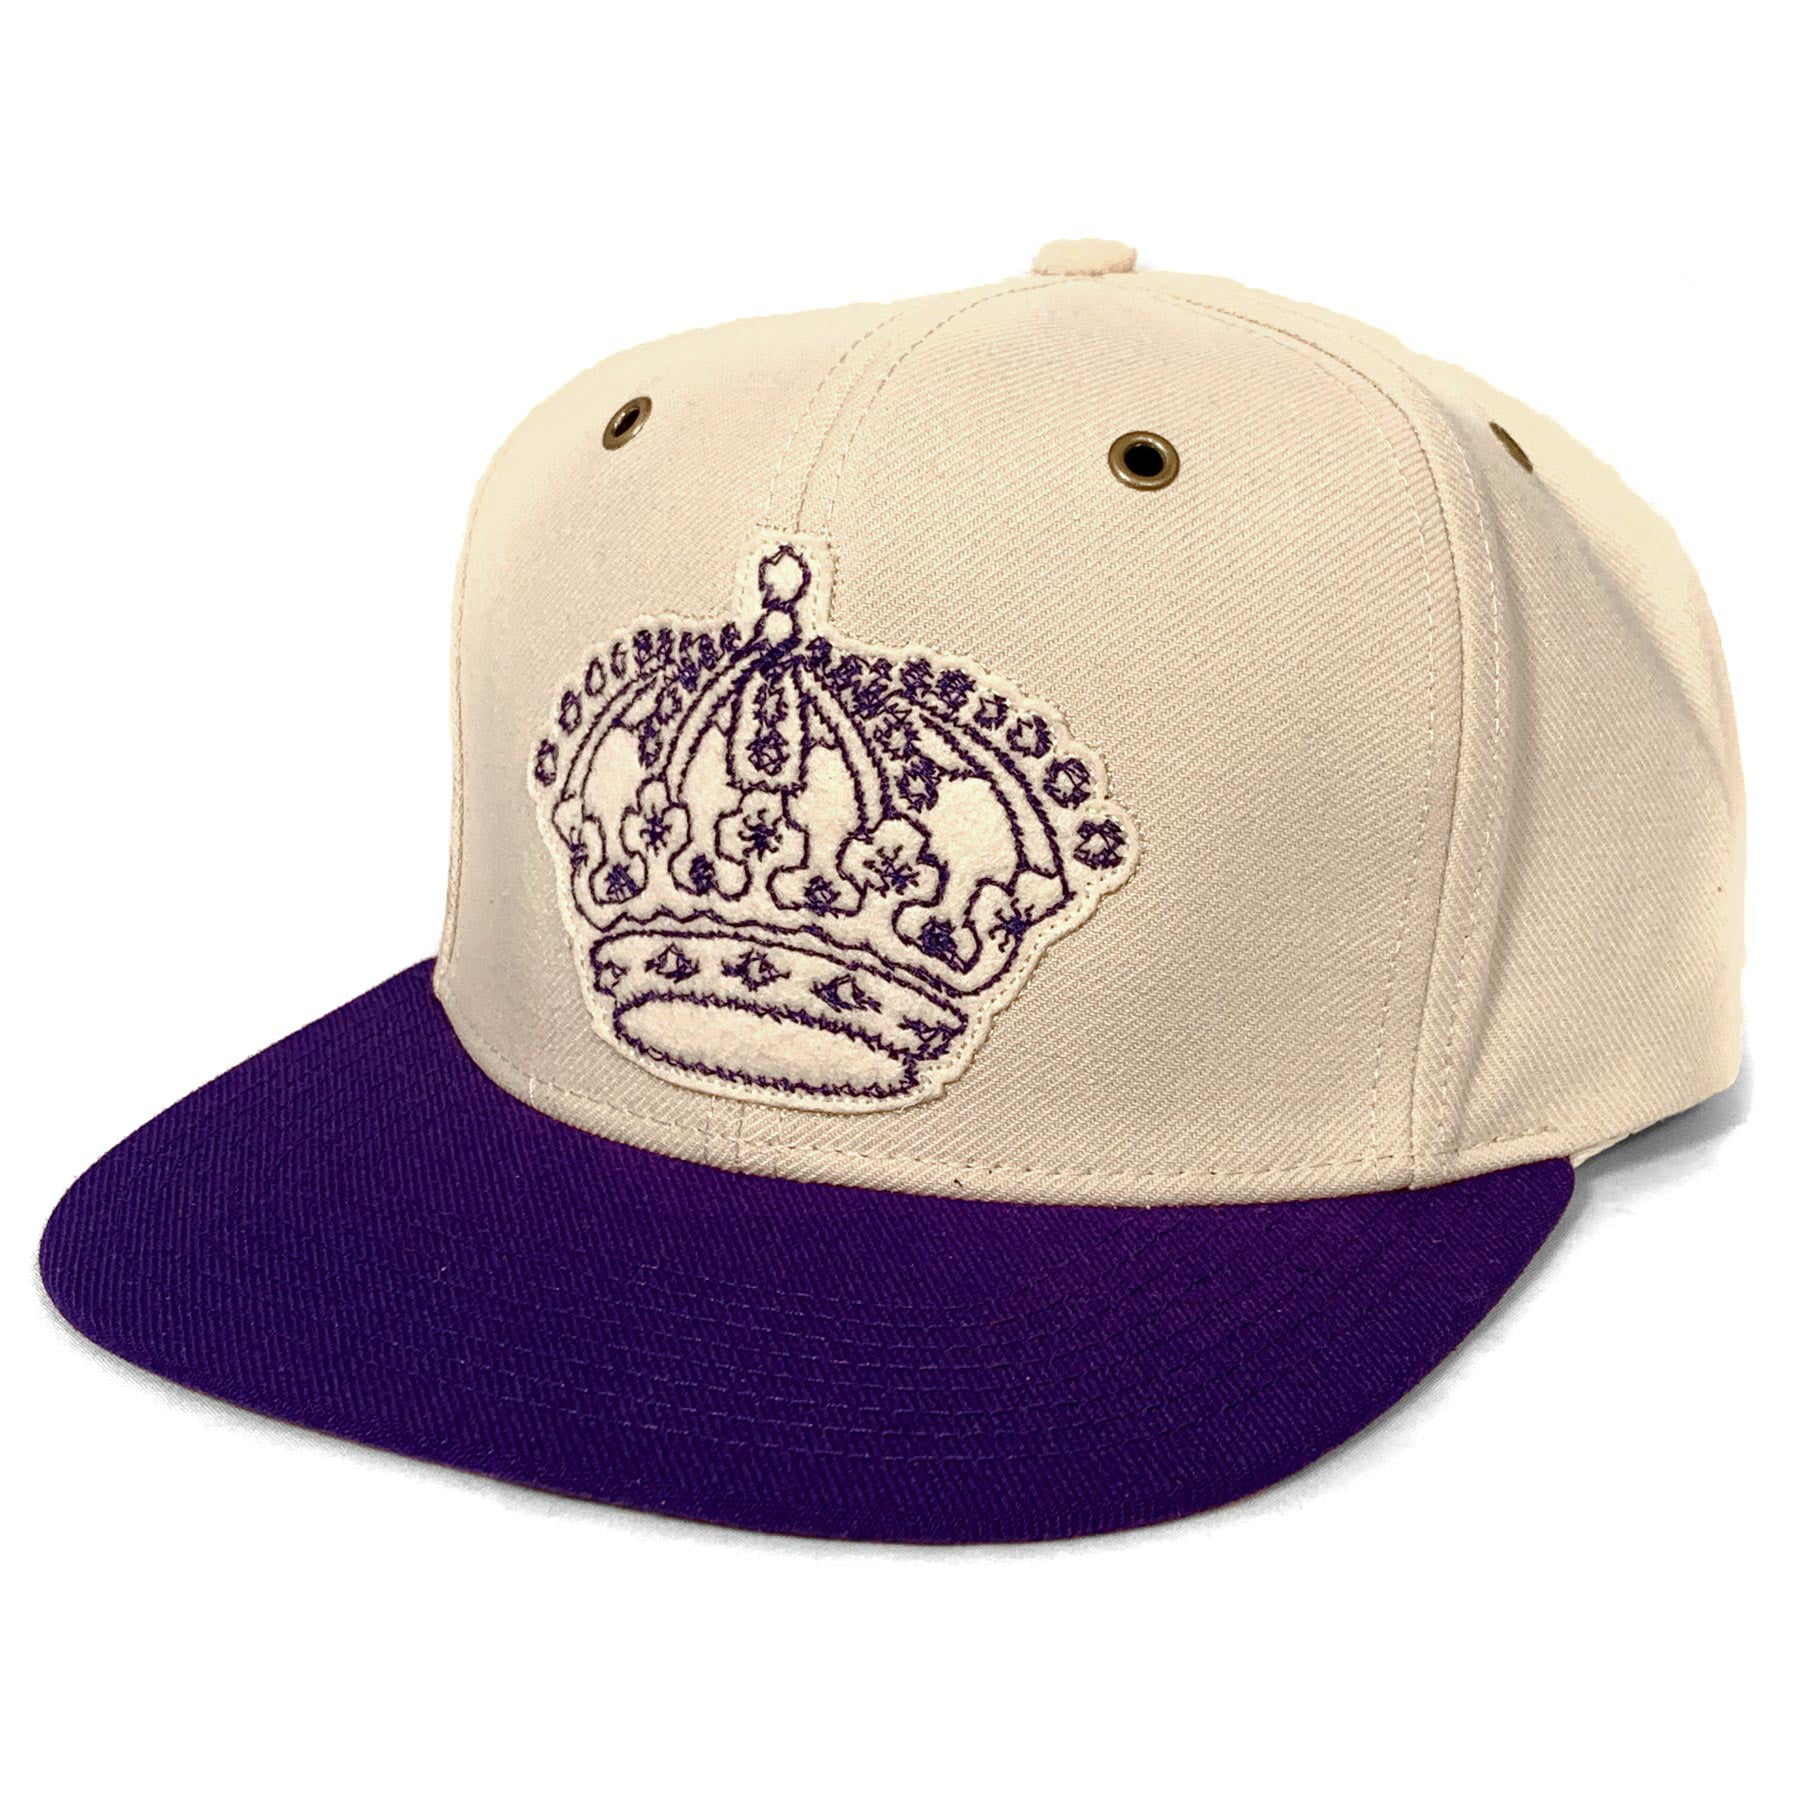 los angeles kings purple hat